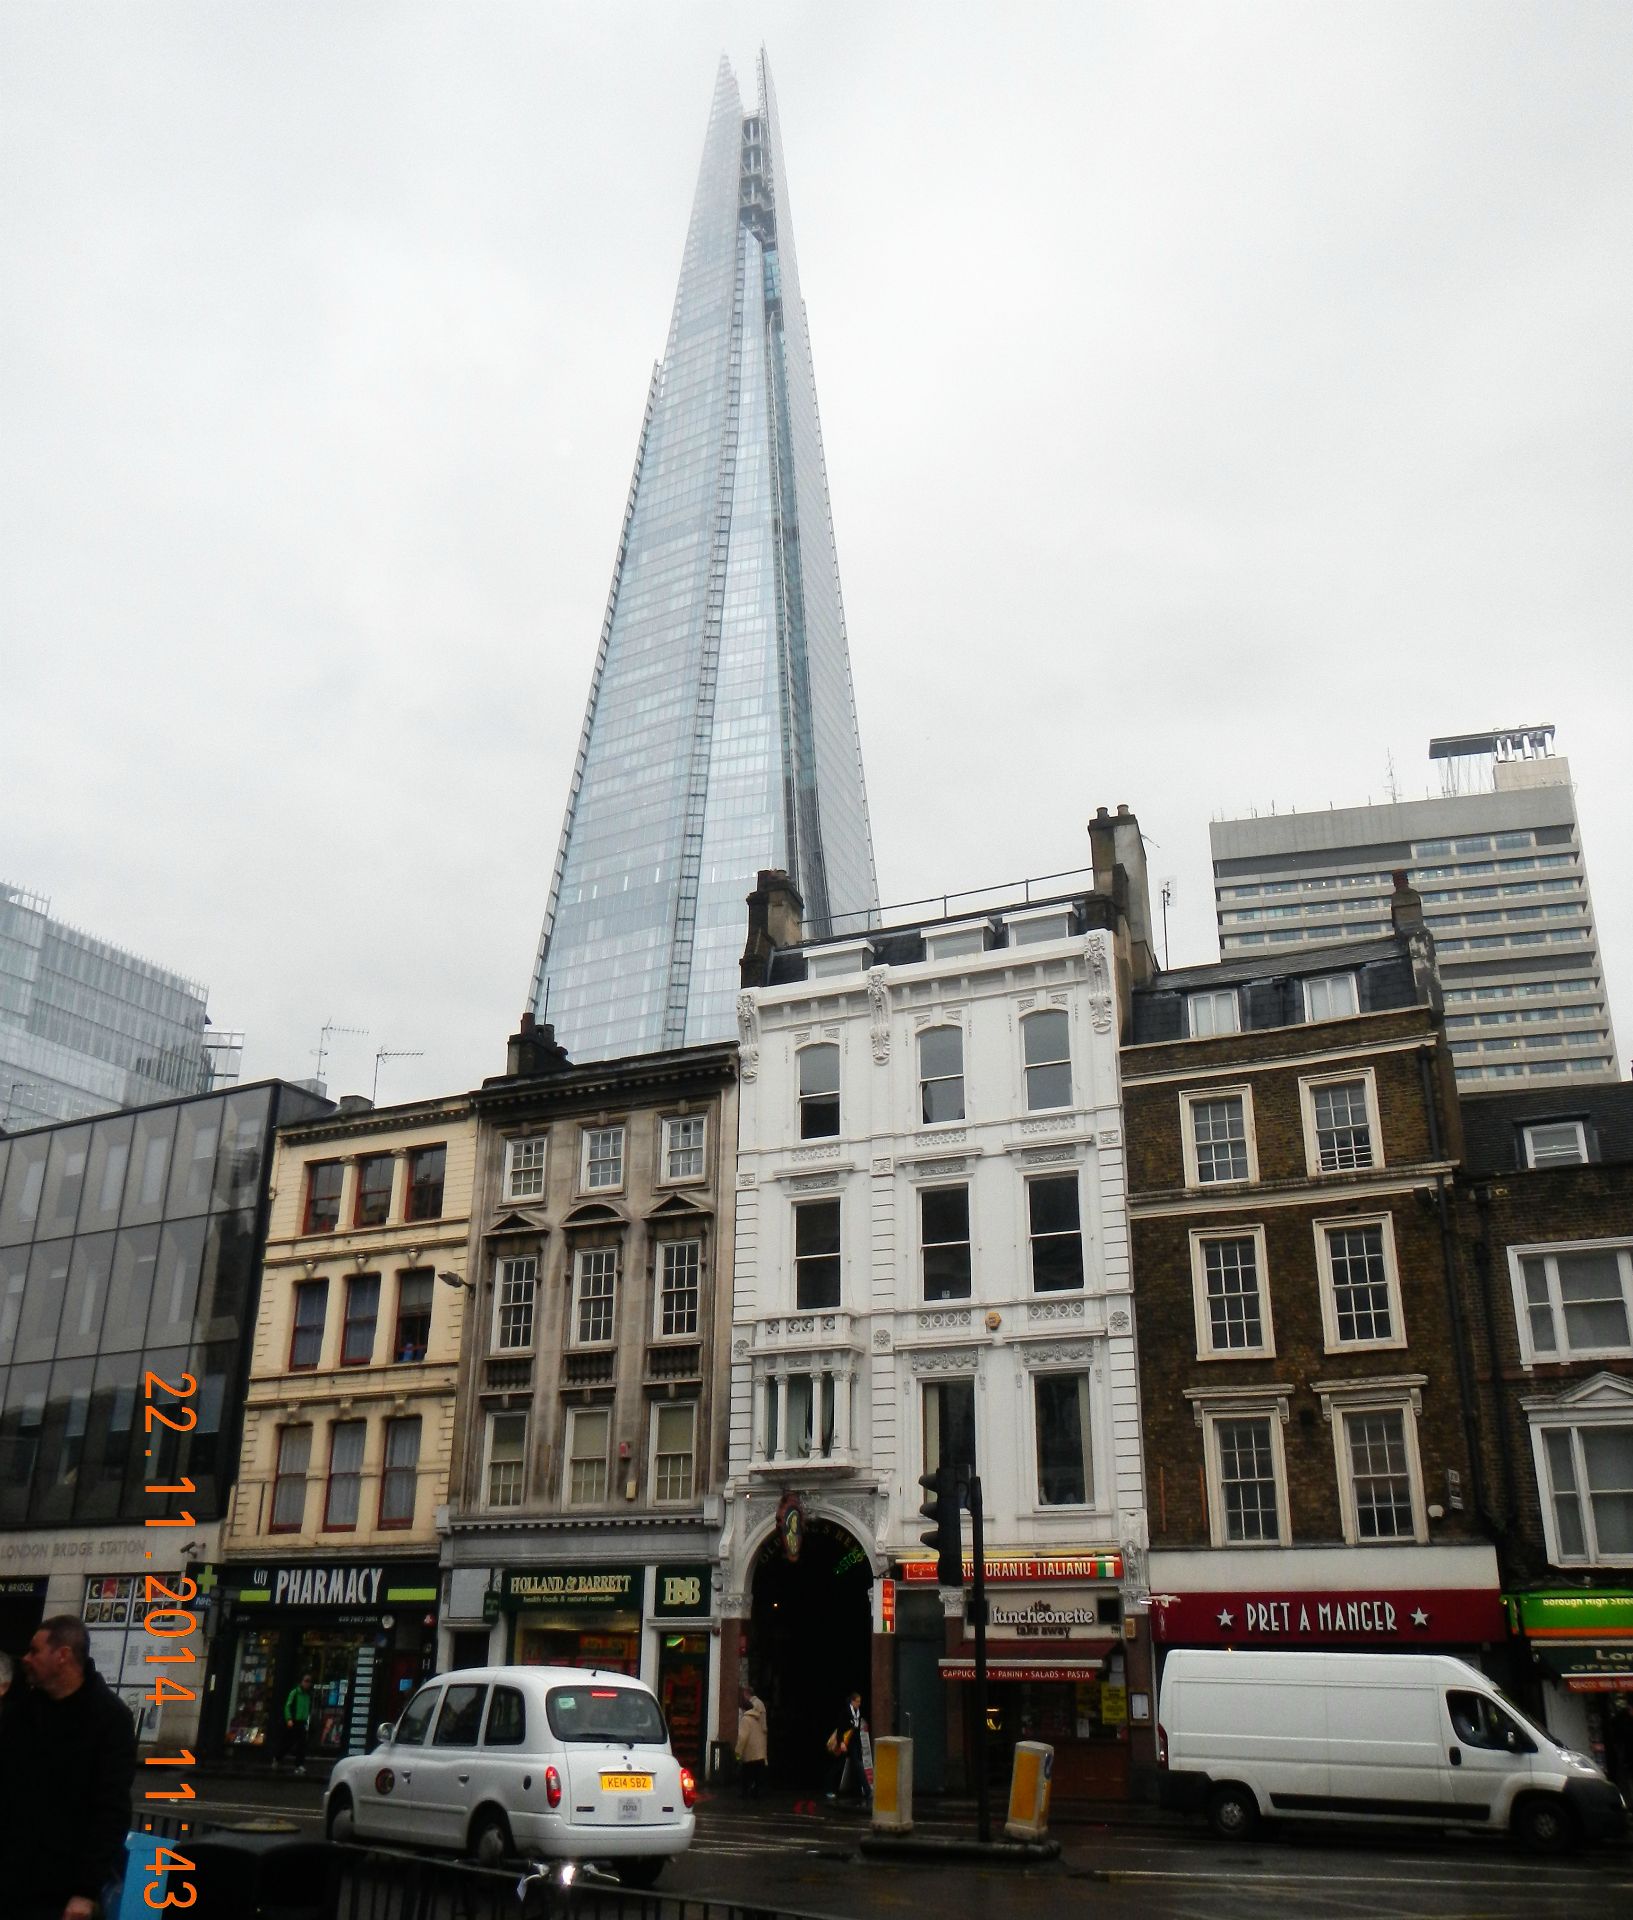 The Shard ist ein Wolkenkratzer in Londons Stadtteil Southwark, der mit 310 Meter von Juli bis Oktober 2012 das höchste Gebäude Europas war und derzeit das höchste Gebäude der EU ist.